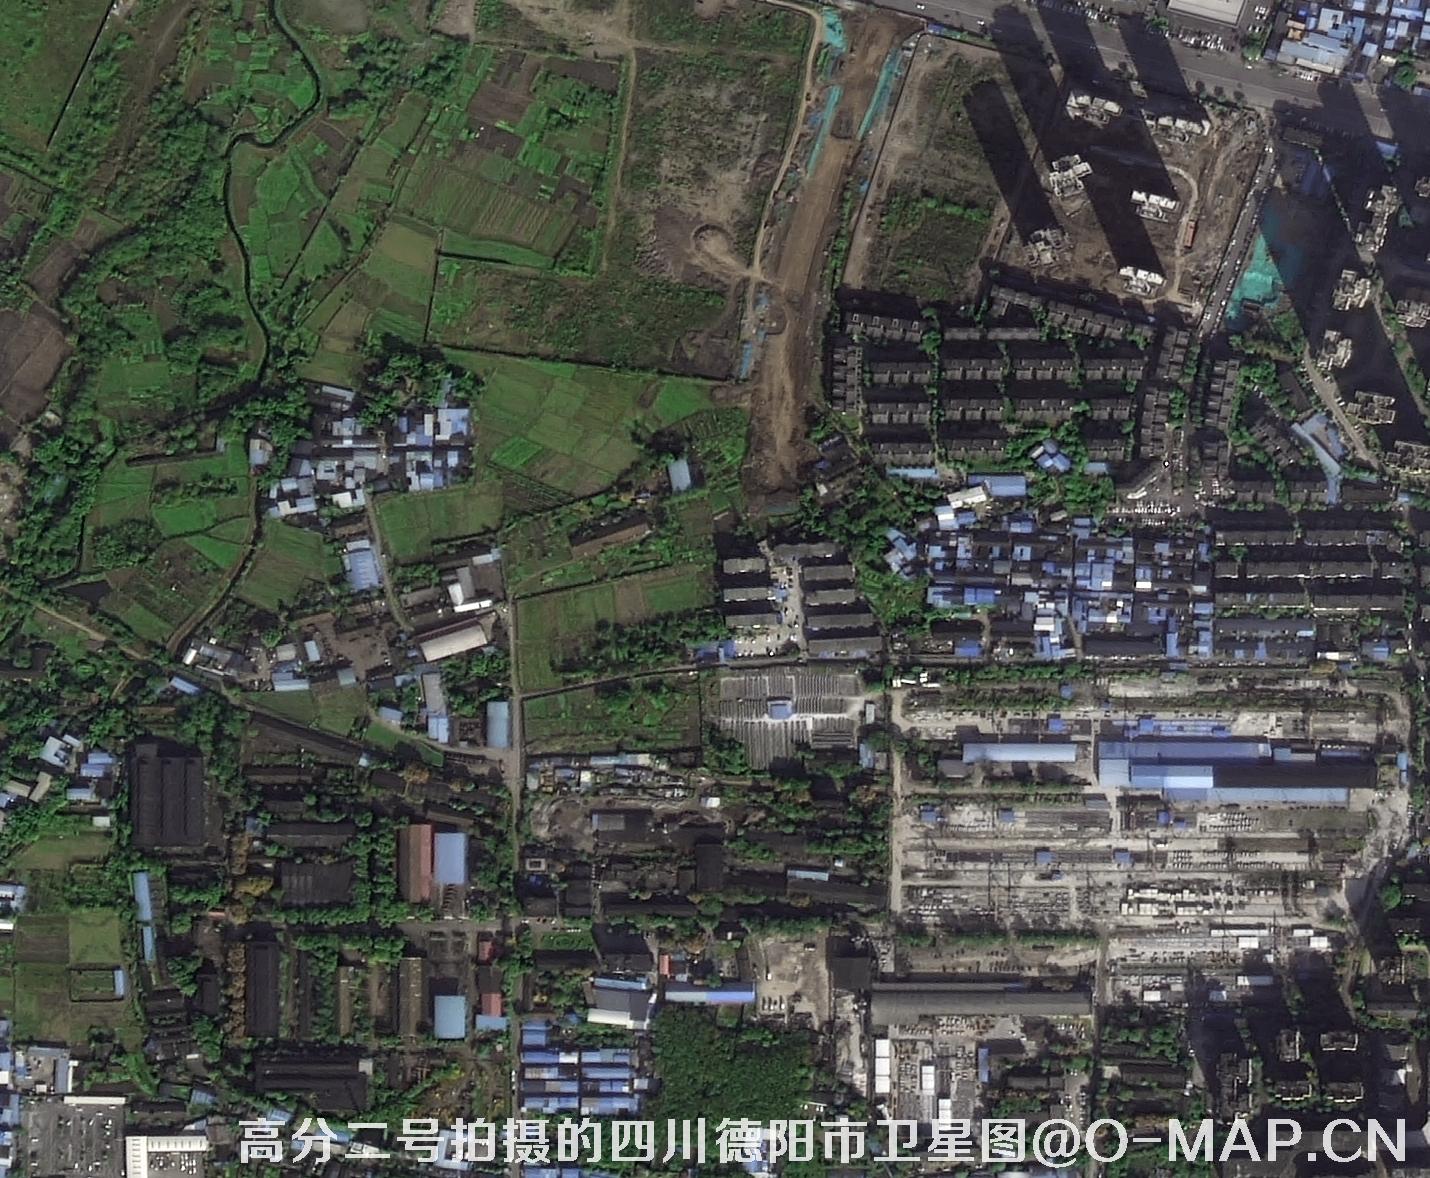 高分二号卫星拍摄的0.8米分辨率遥感影像数据